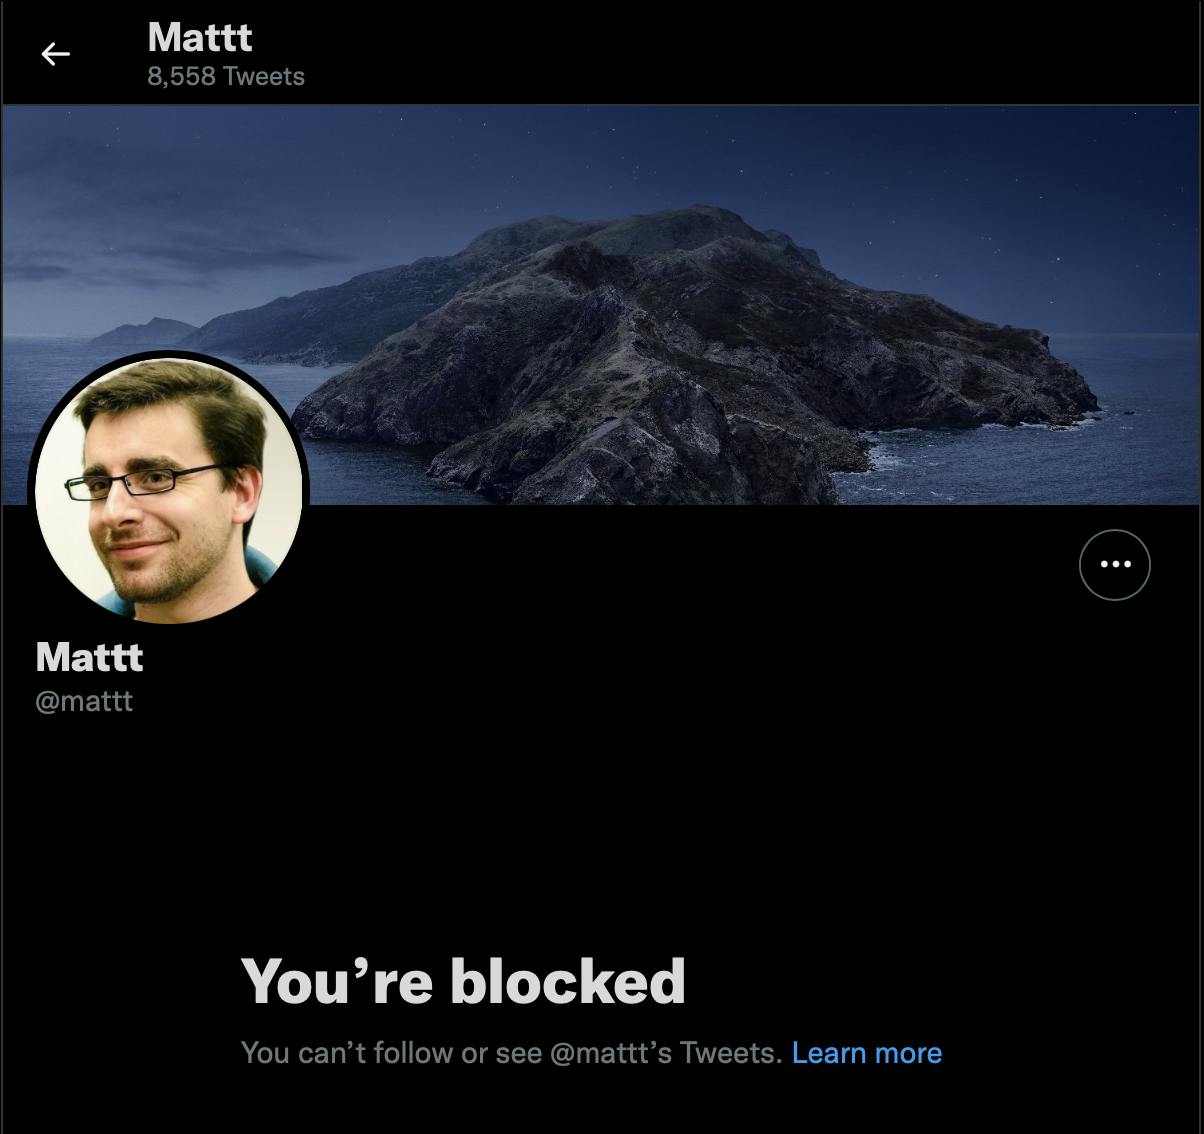 mattt blocked me